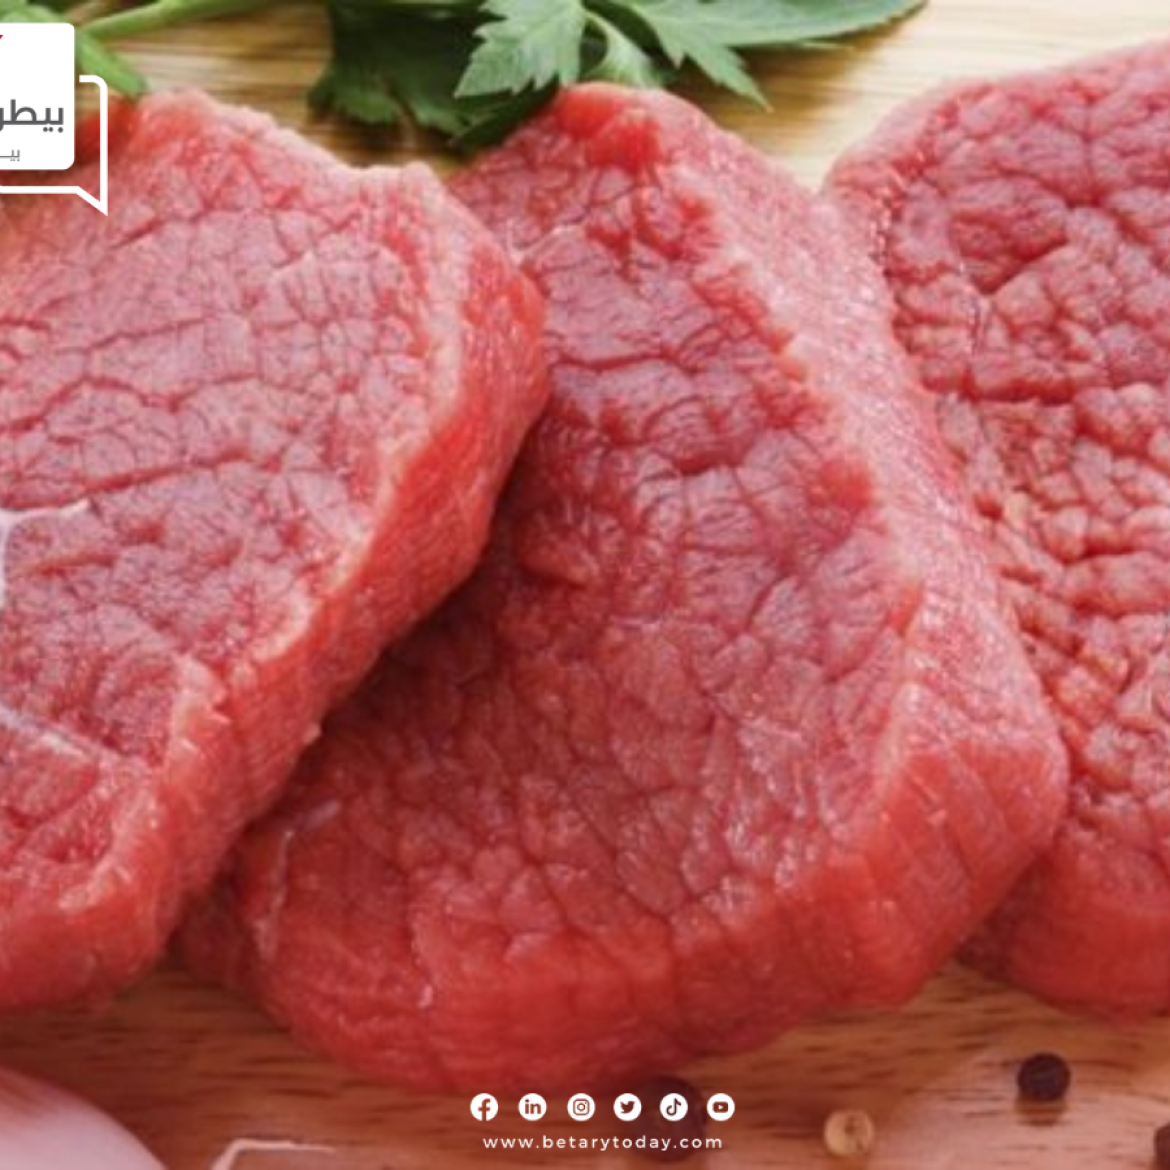 "هدوء متوقع"... أسعار اللحوم الحمراء البلدي والمستوردة اليوم الإثنين